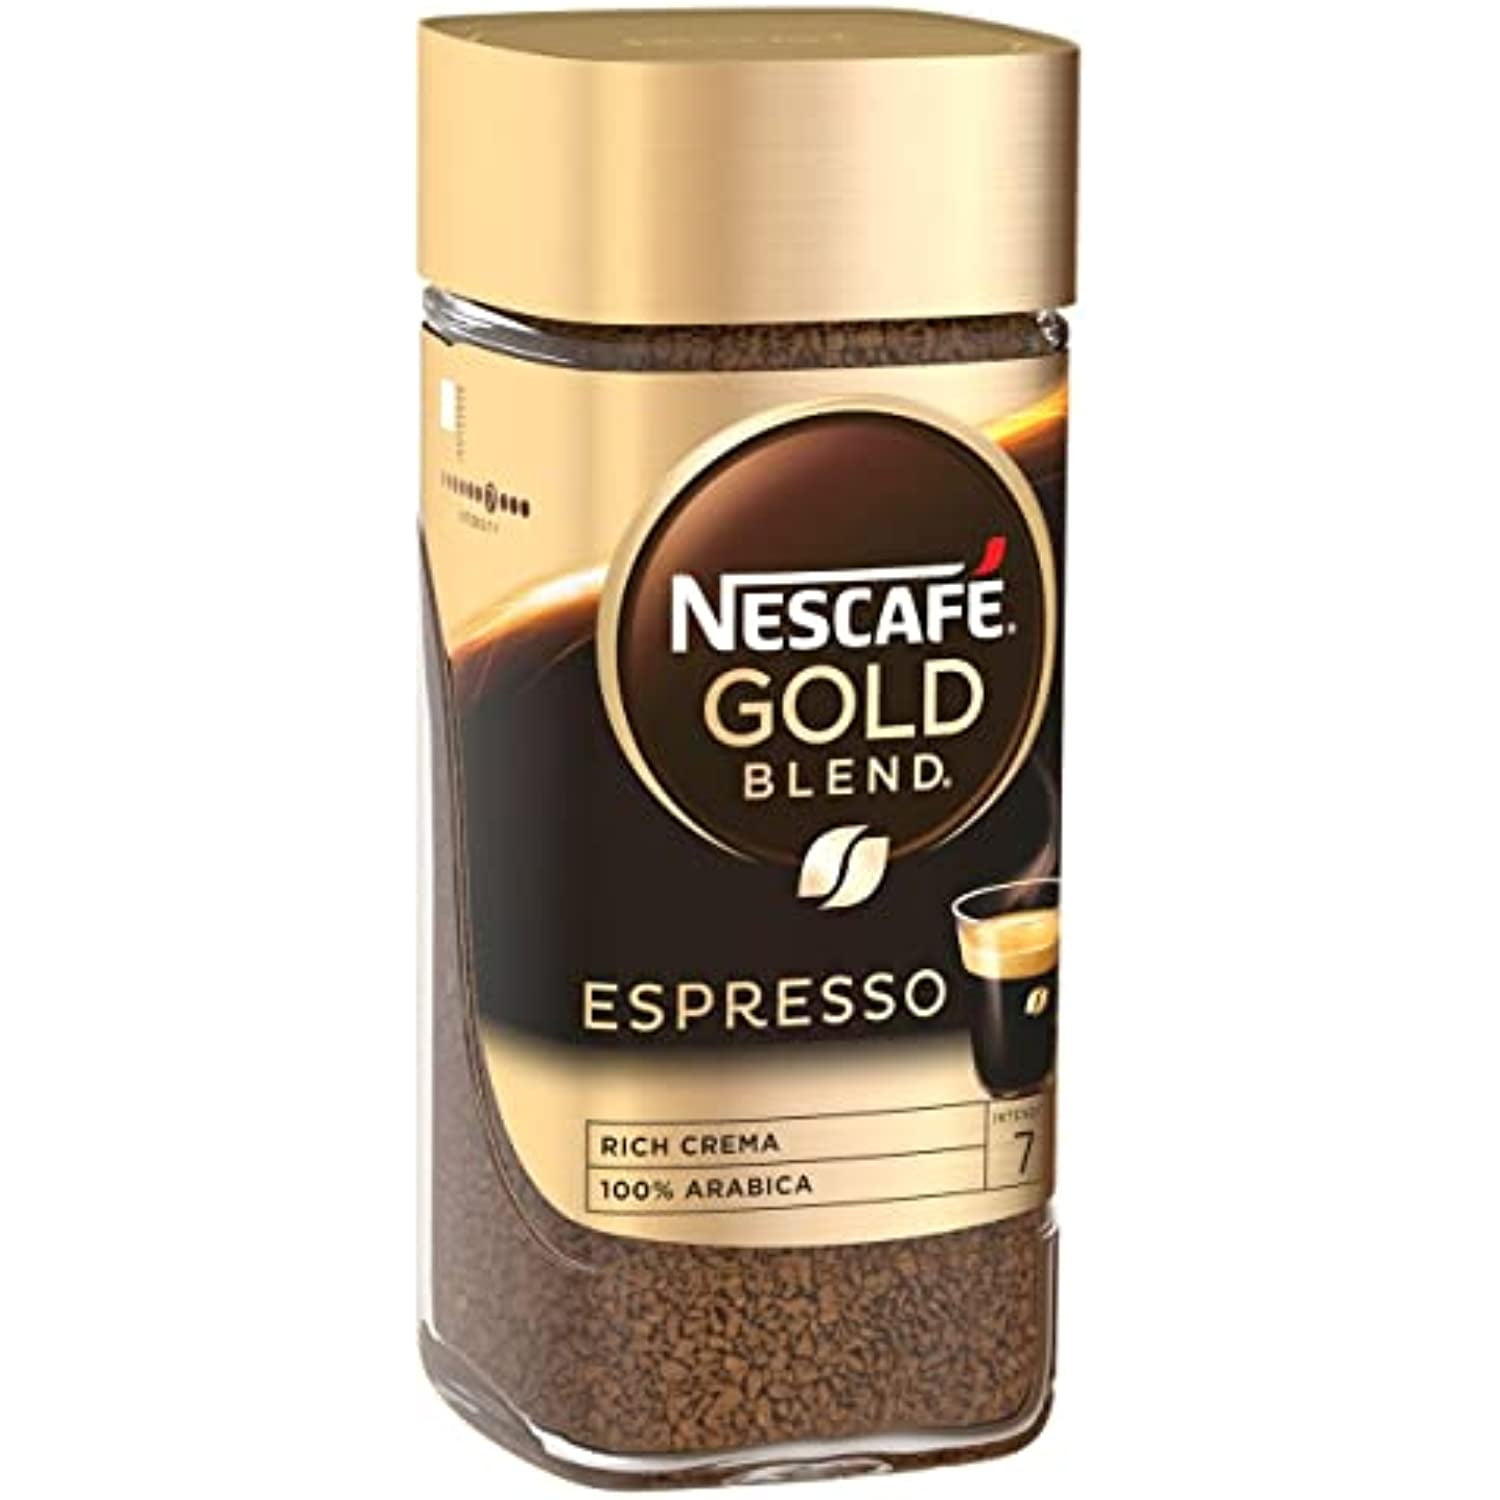 Nescafe Gold Expresso Arabica Coffee 100% 95g